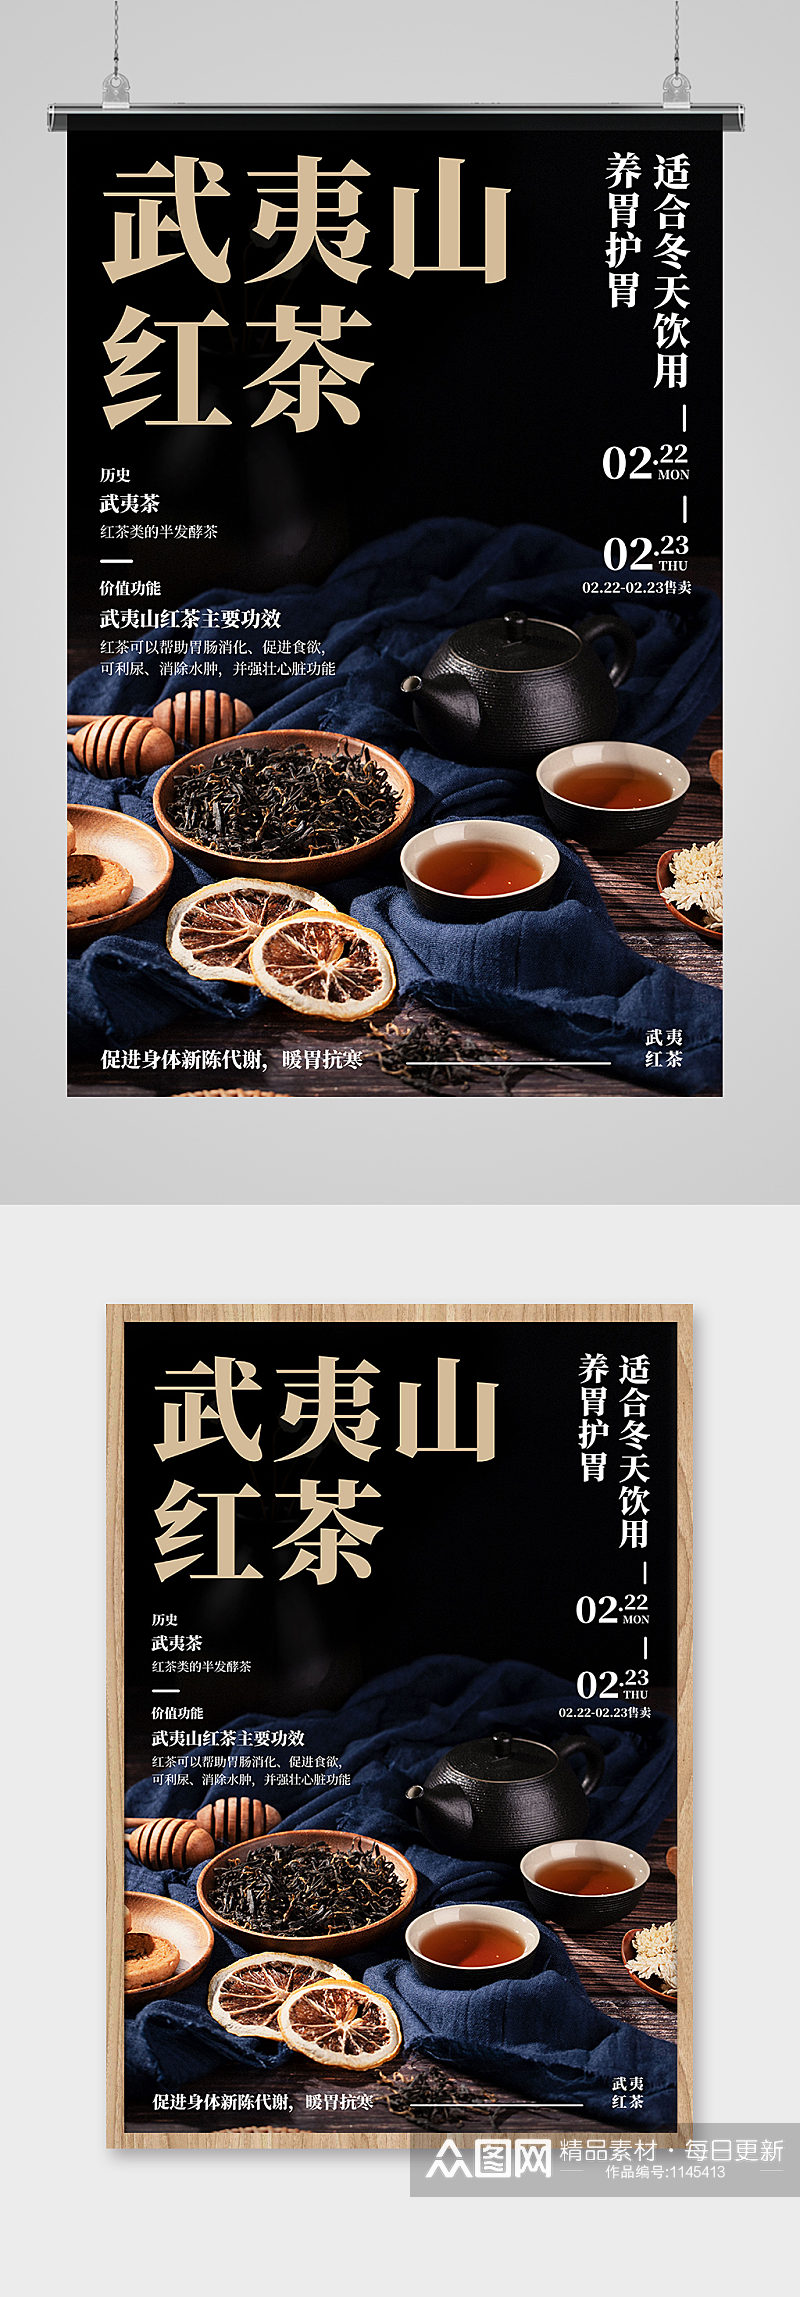 中国武夷山红茶海报素材